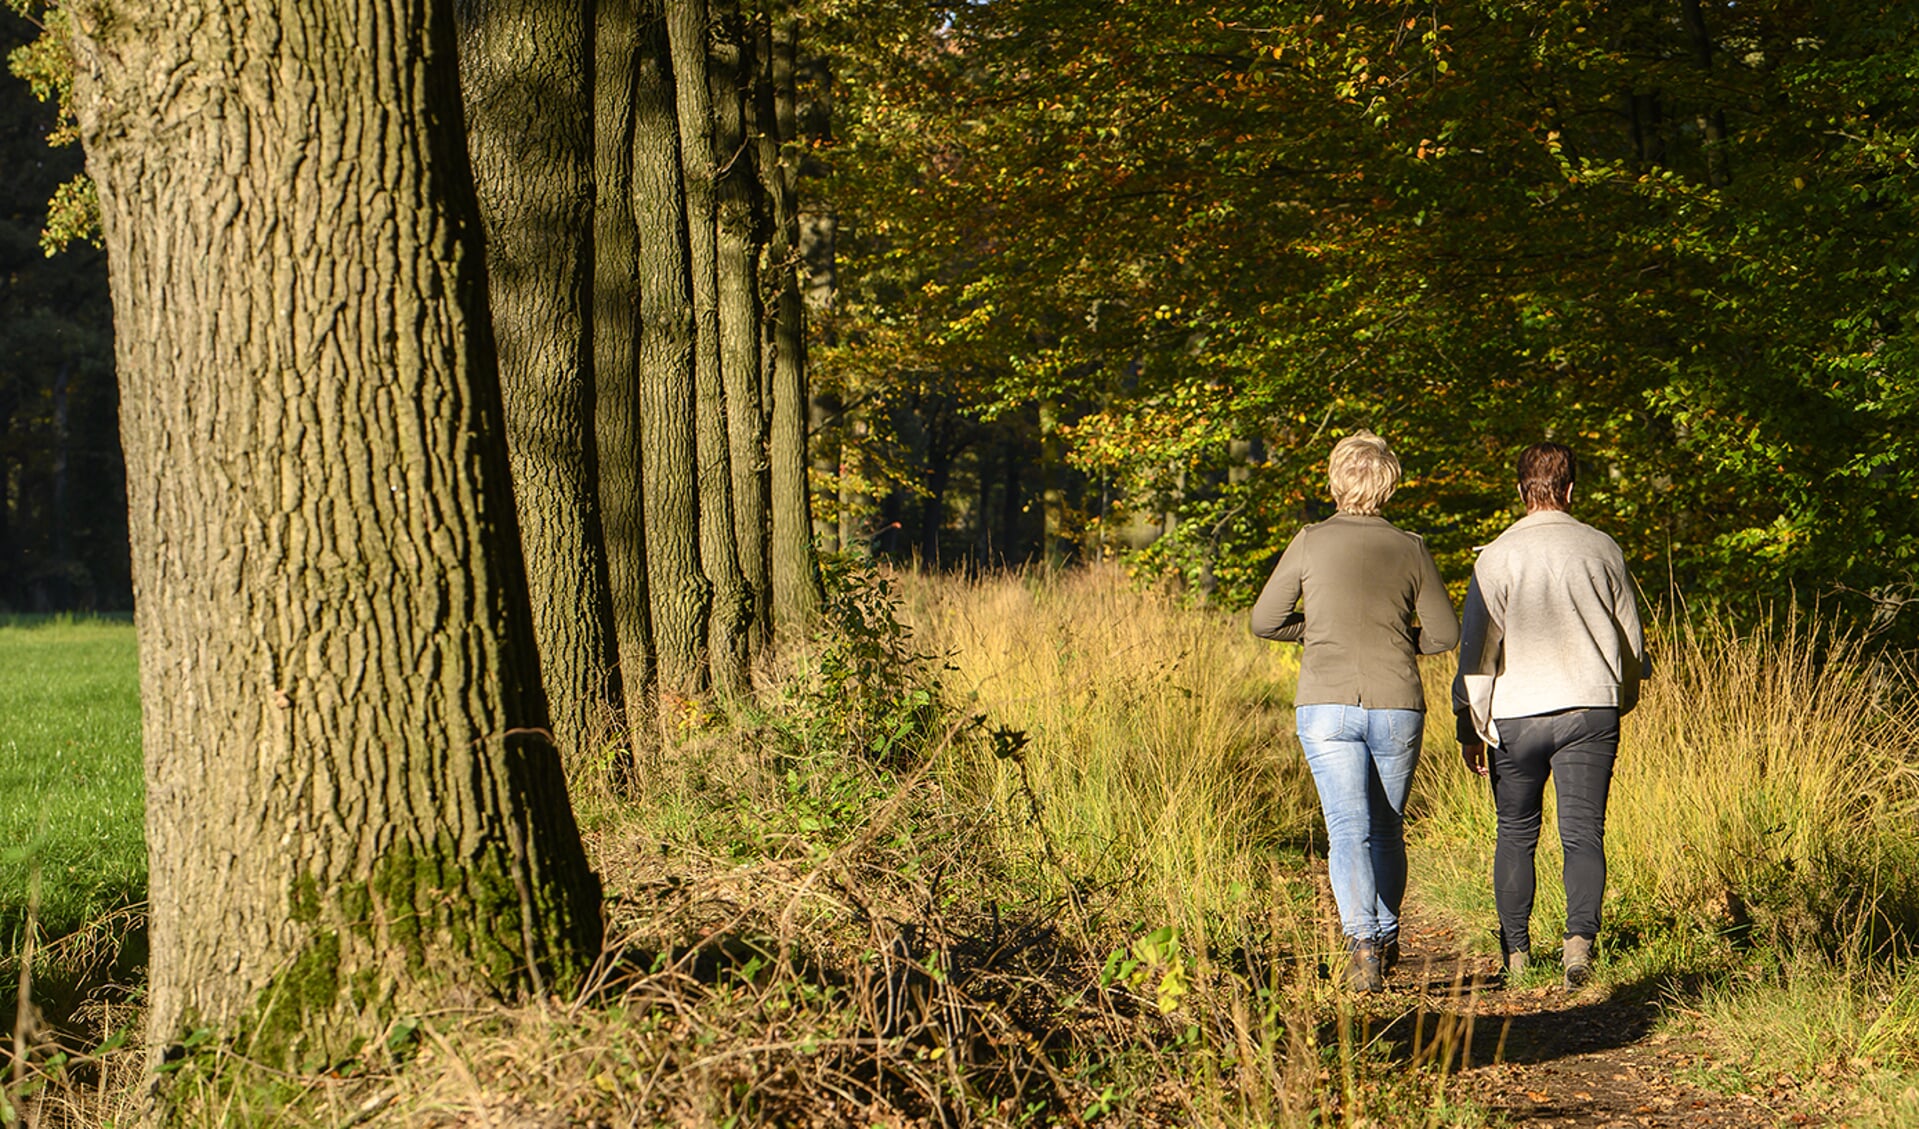 Op zondag 29 oktober kunnen wandelaars genieten van de herfstkleuren in het Winterswijkse coulisselandschap. Foto: 100%Winterswijk/Annet Piek